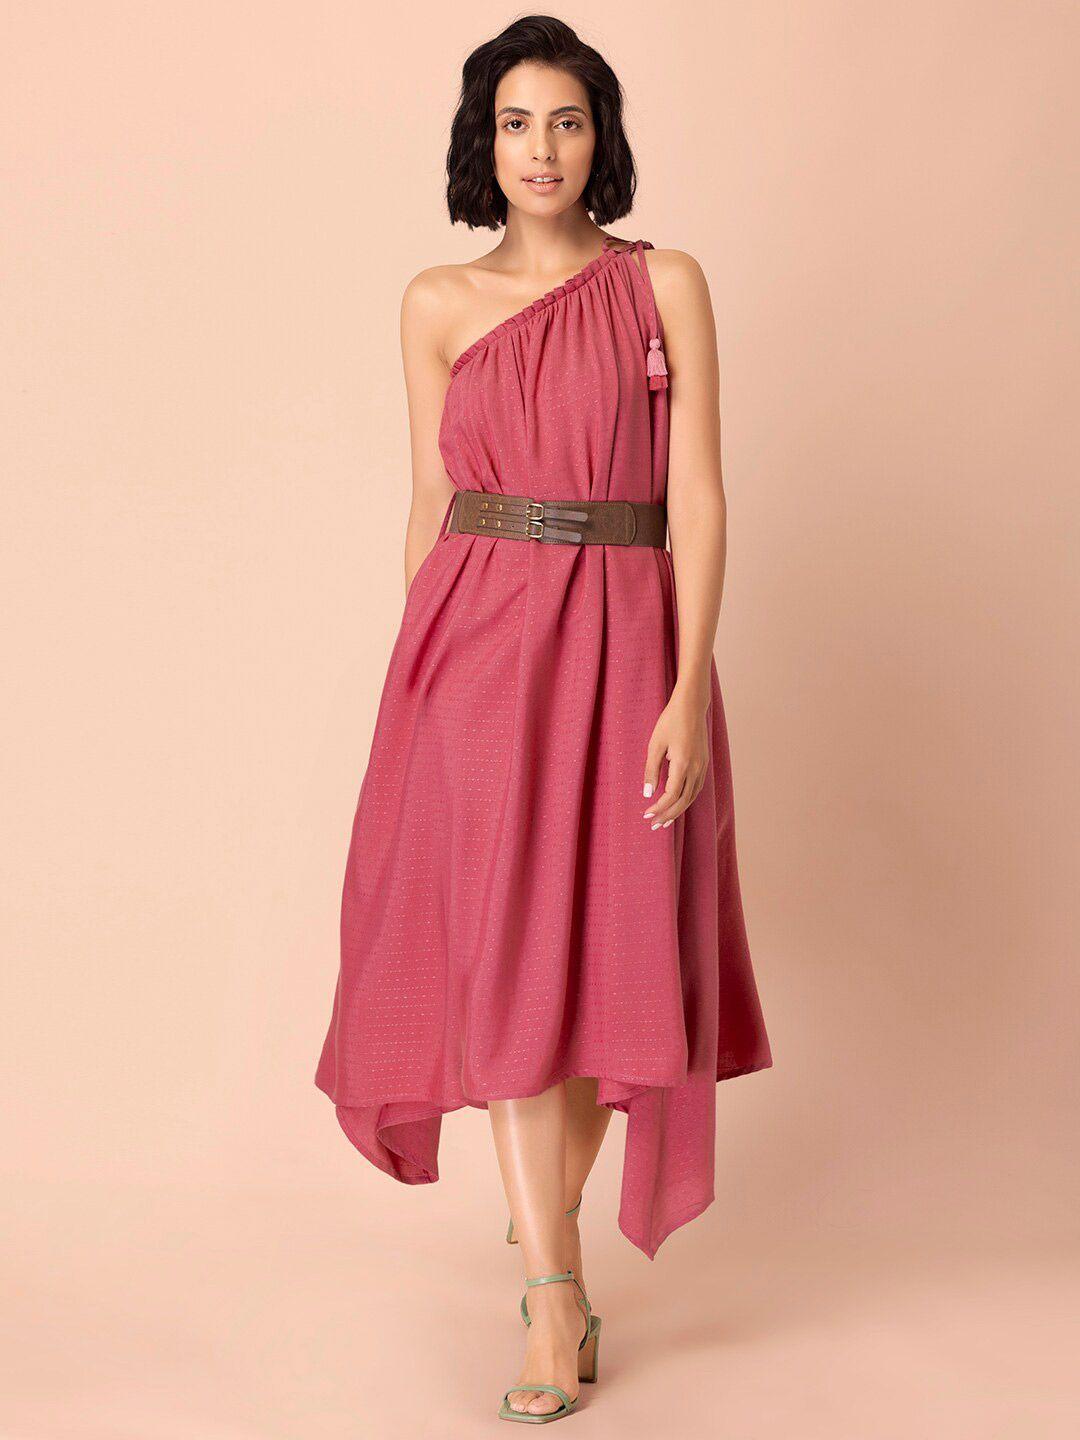 indya women pink solid one shoulder dresses with leather belt